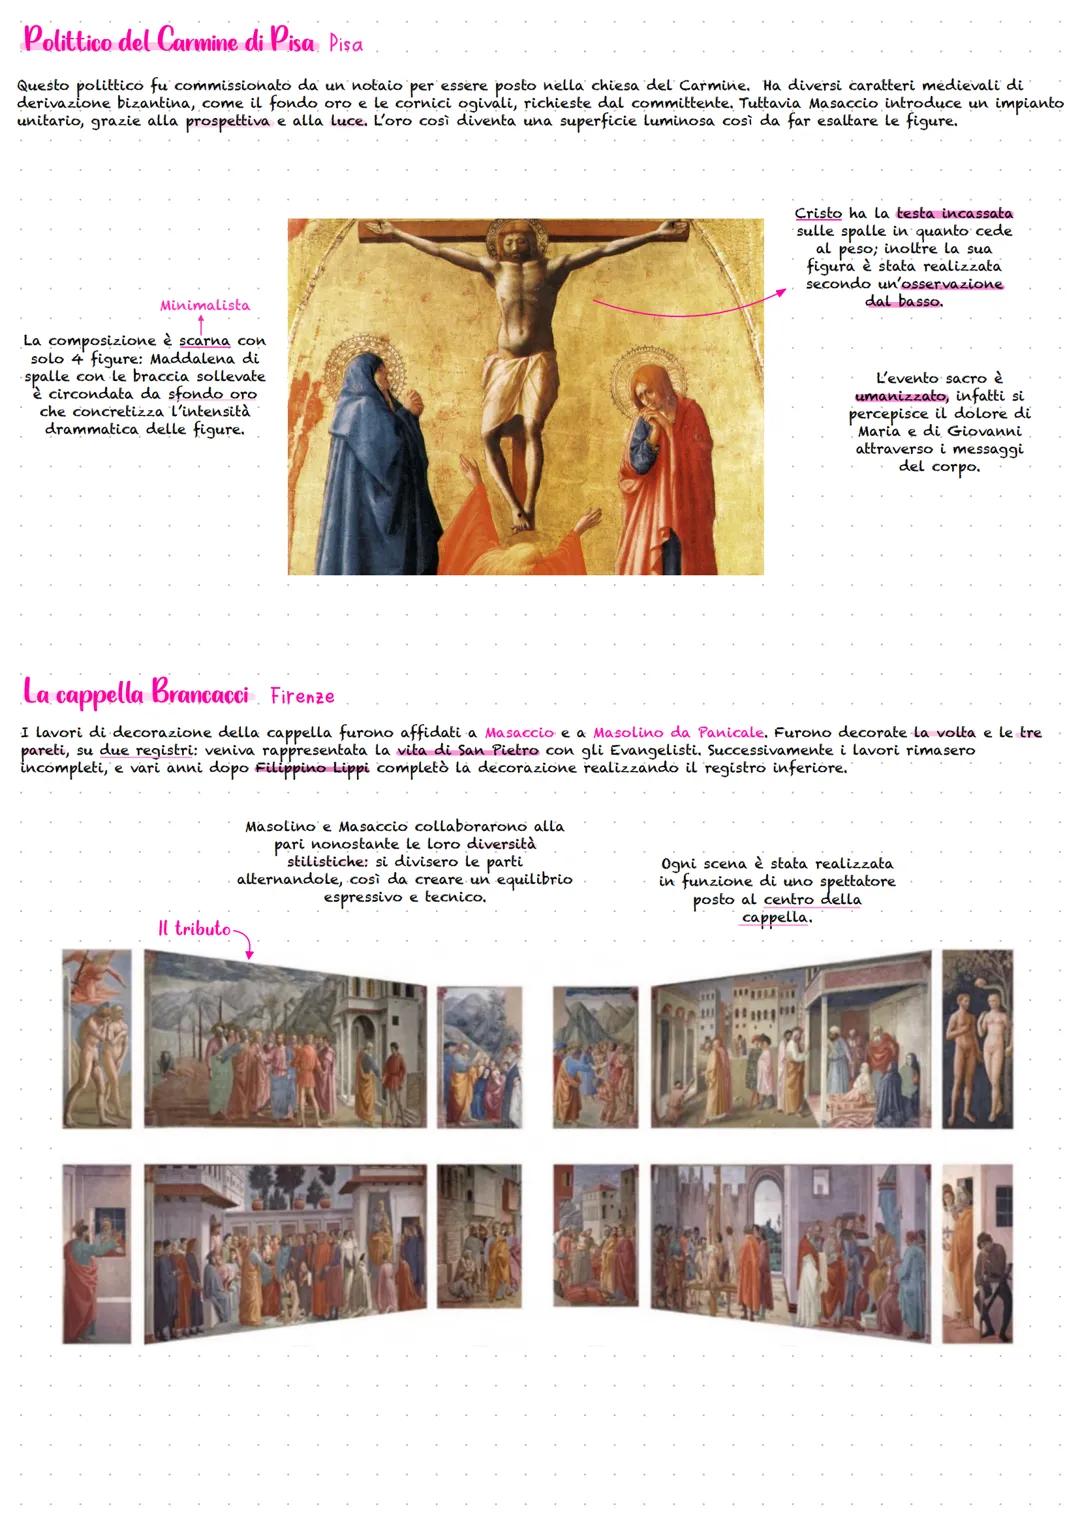 Masaccio
Masaccio insieme a Brunelleschi e Donatello rappresenta uno degli iniziatori del Rinascimento a Firenze. La sua carriera
artistica 